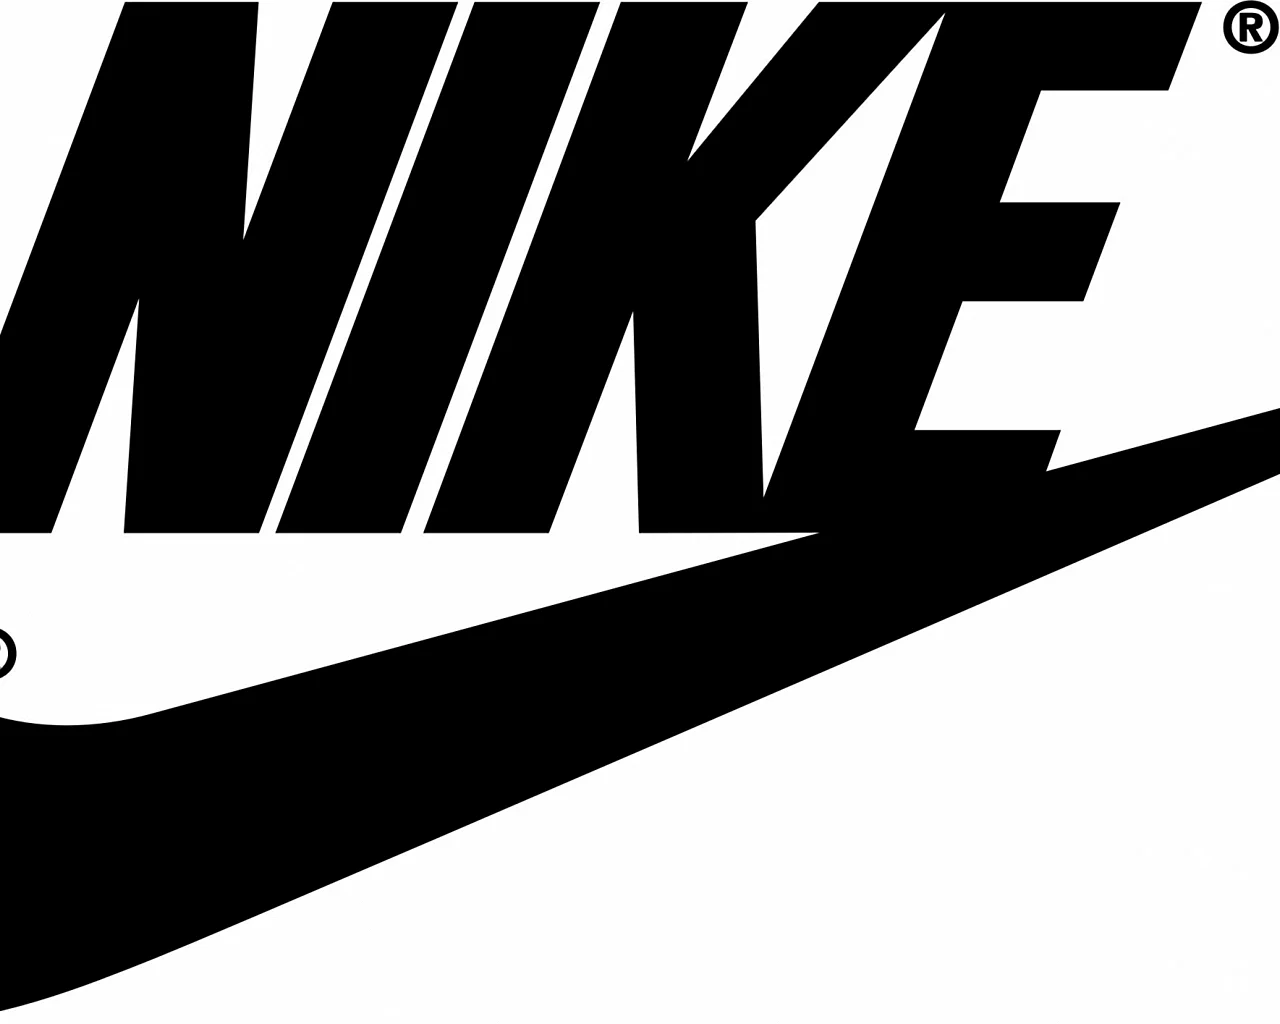 Nike logo 1985